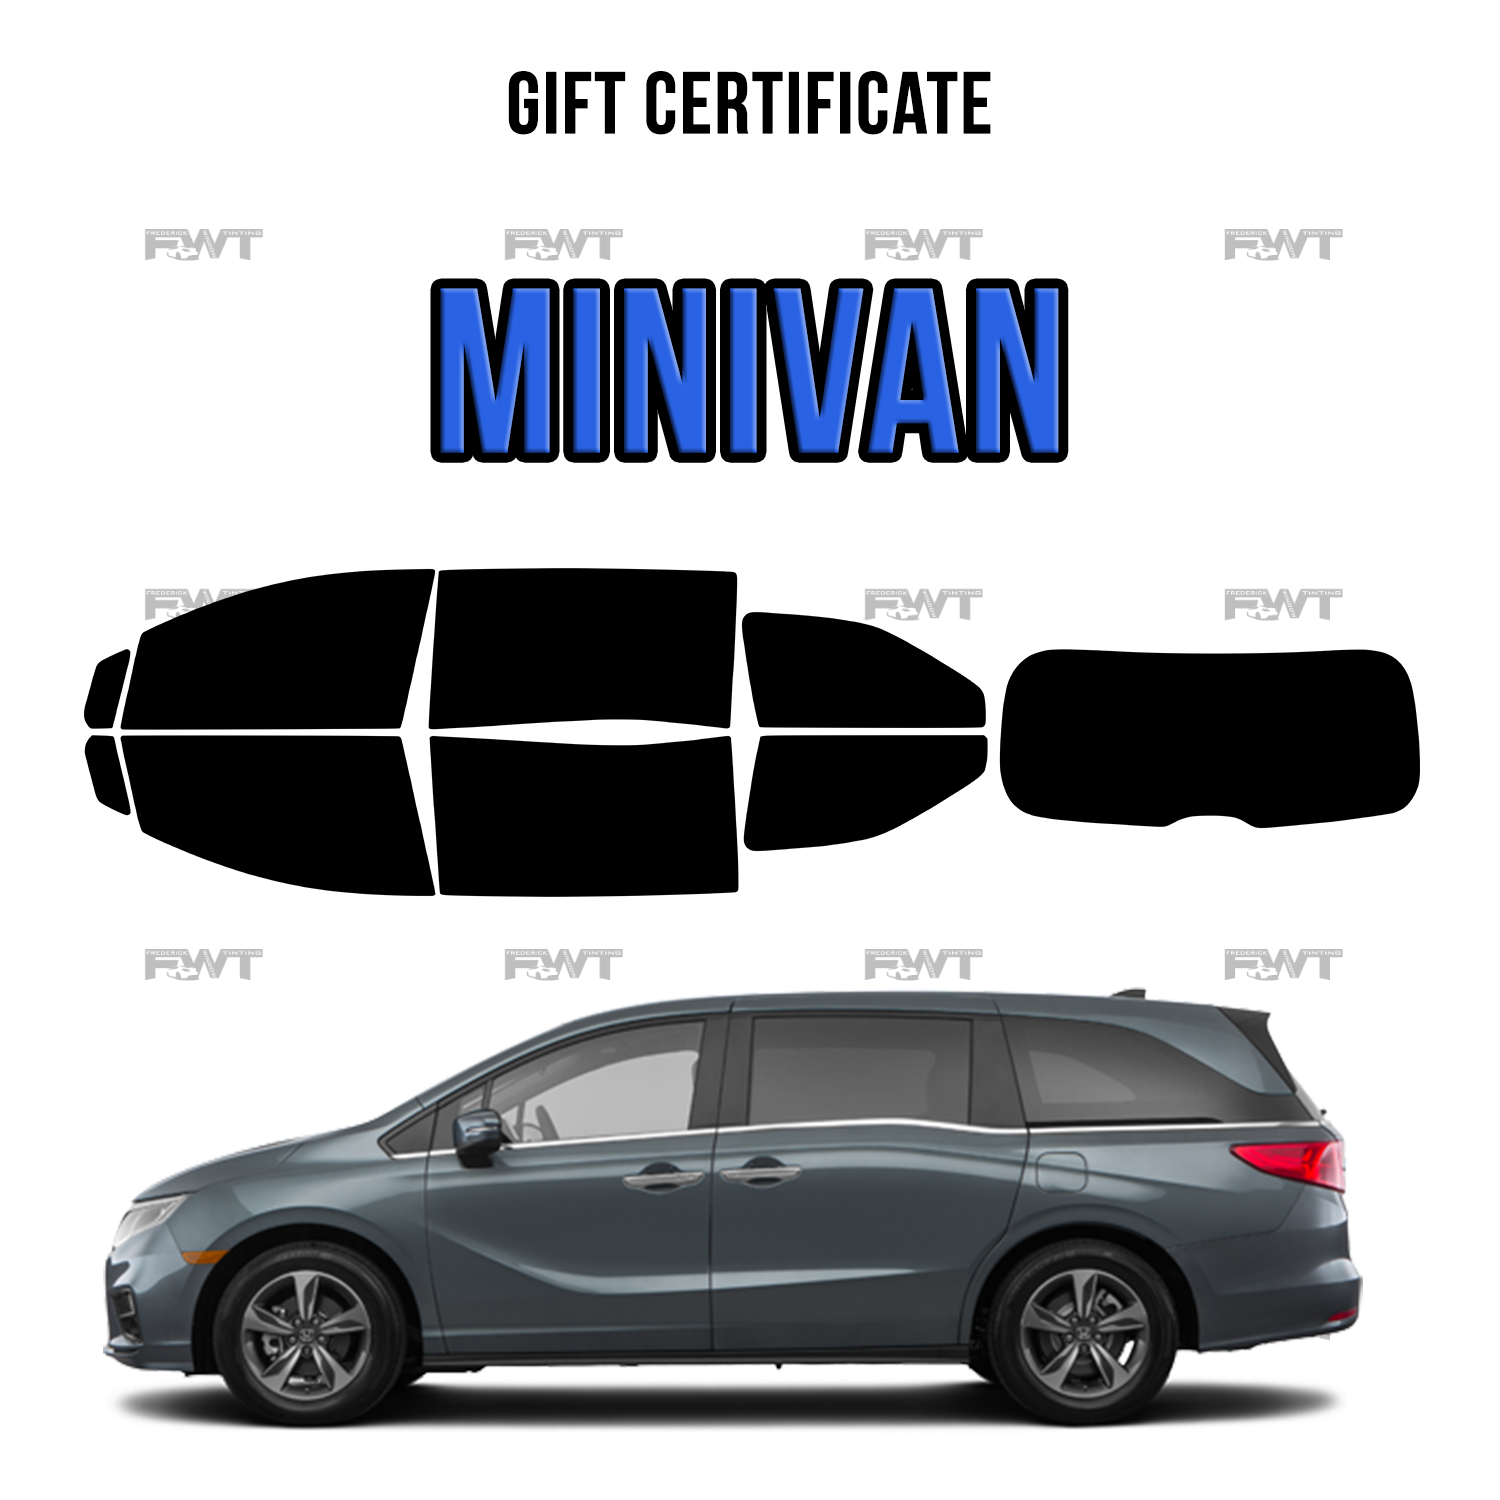 Minivan - $600.00